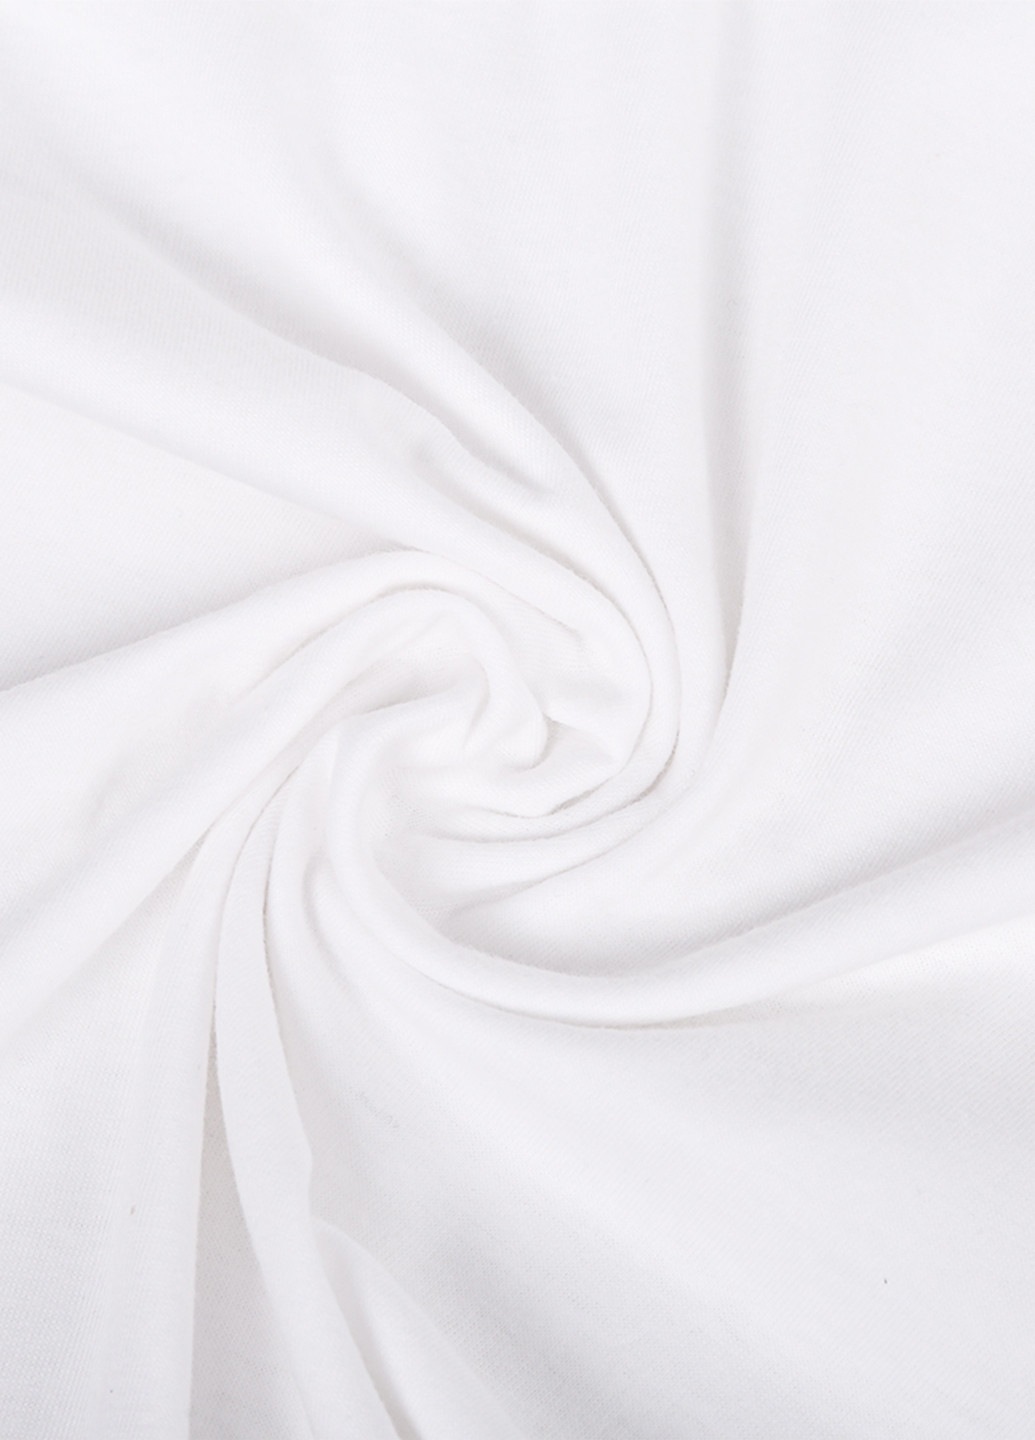 Белая демисезонная футболка детская пубг (pubg) белый (9224-1180) 164 см MobiPrint